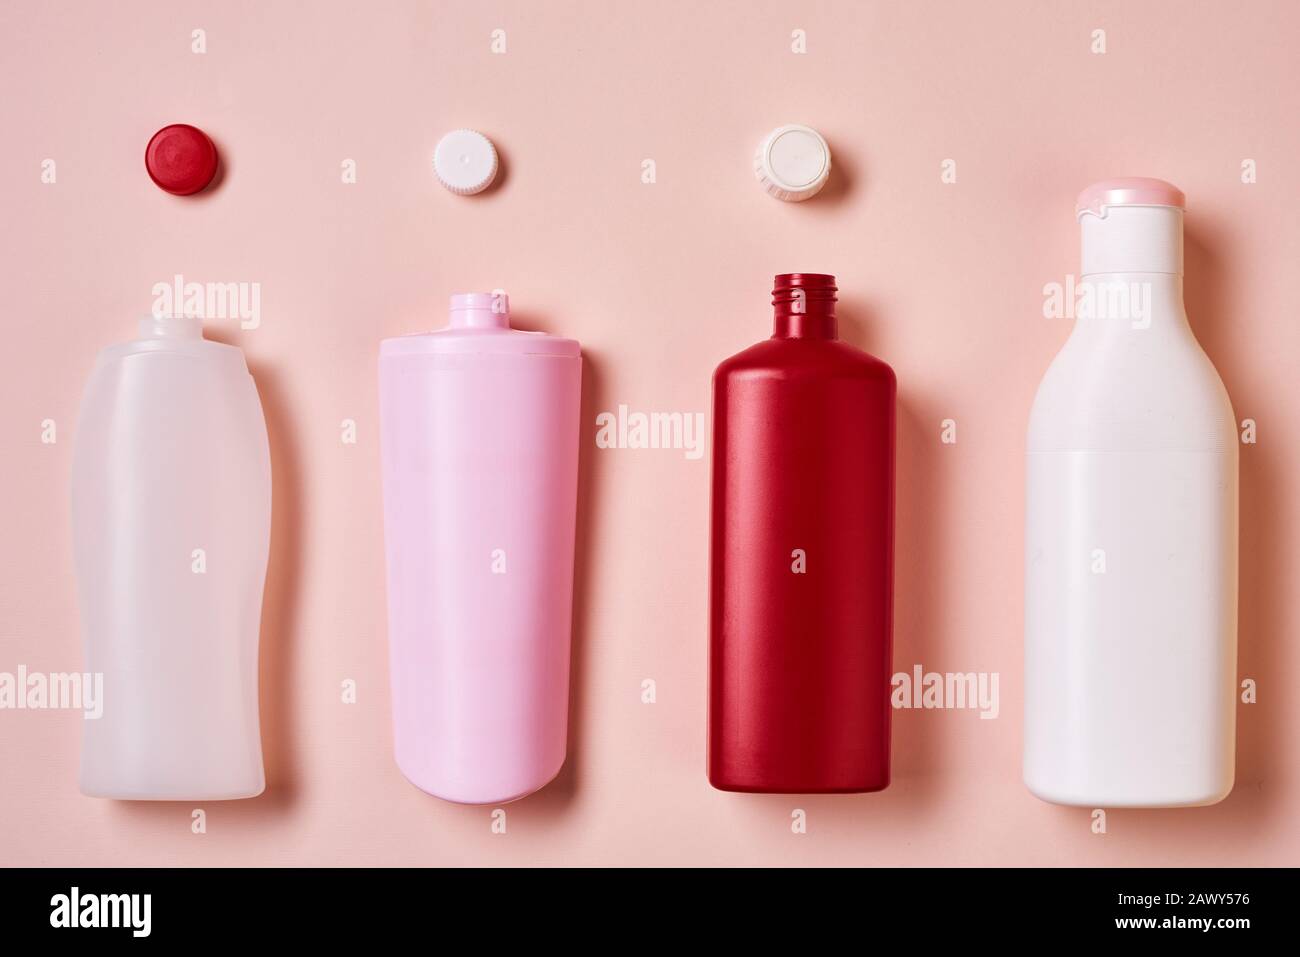 Horizontal à partir de dessus plat image conceptuelle de bouteilles en plastique avec dessus sur fond rose pâle Banque D'Images